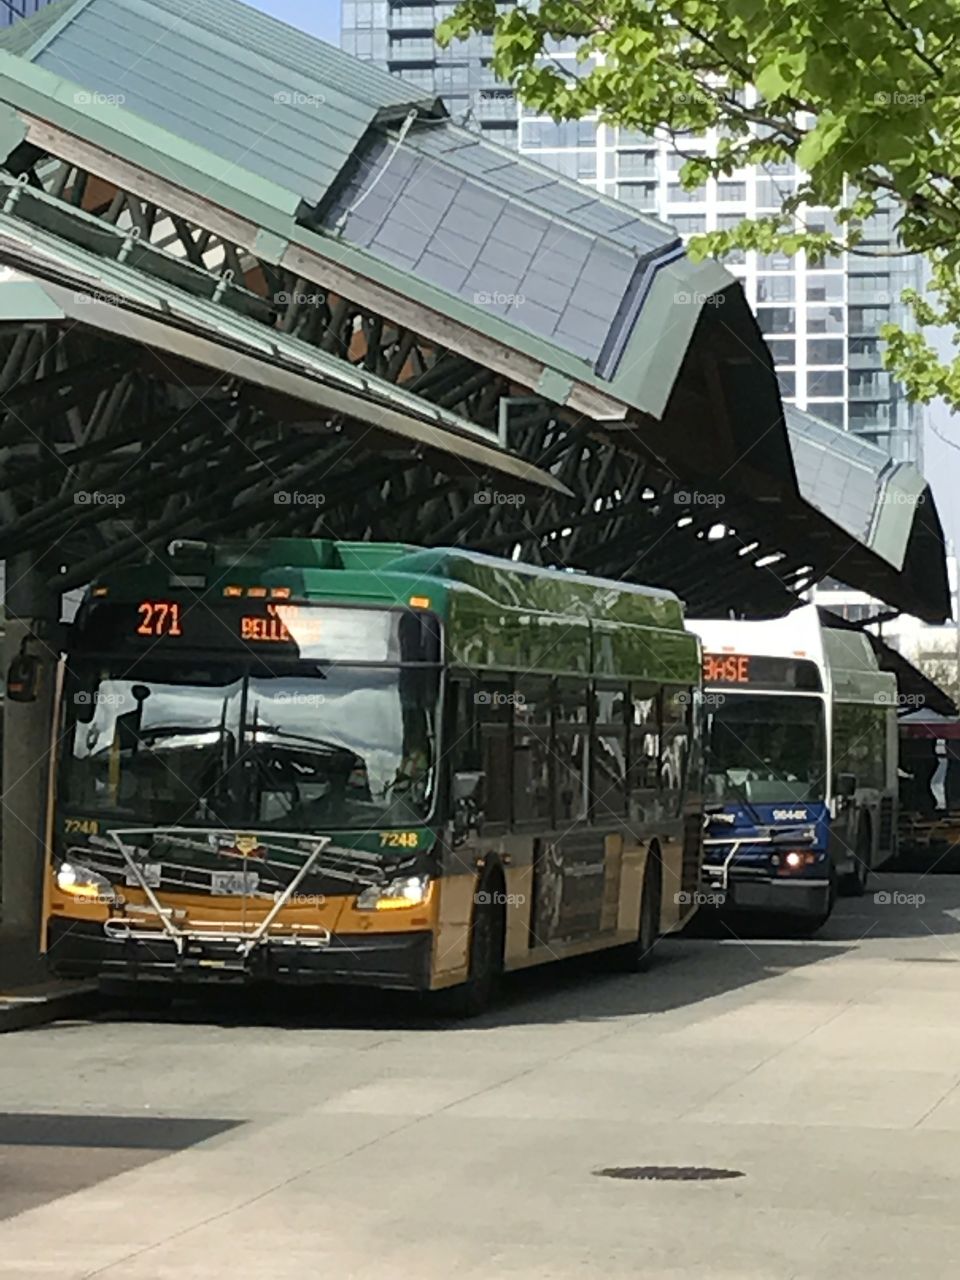 Transit center in Bellevue, WA.